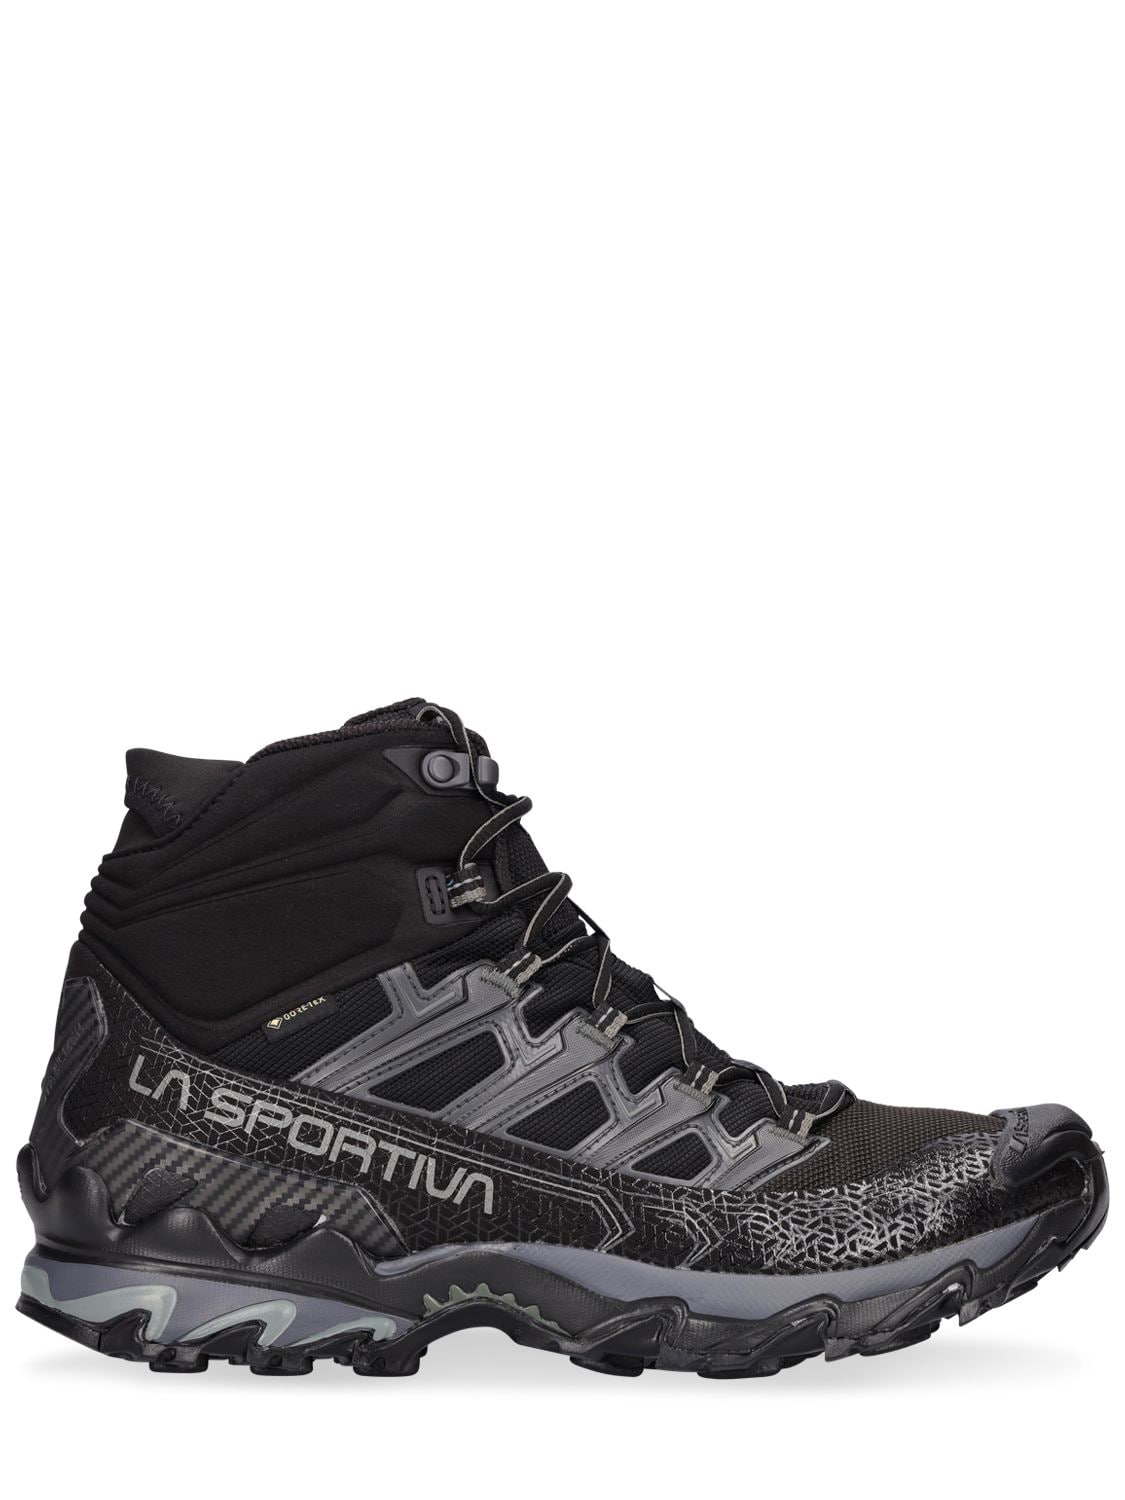 La Sportiva Ultra Raptor Ii Mid Leather Gtx Men's Shoes Black / Cedar